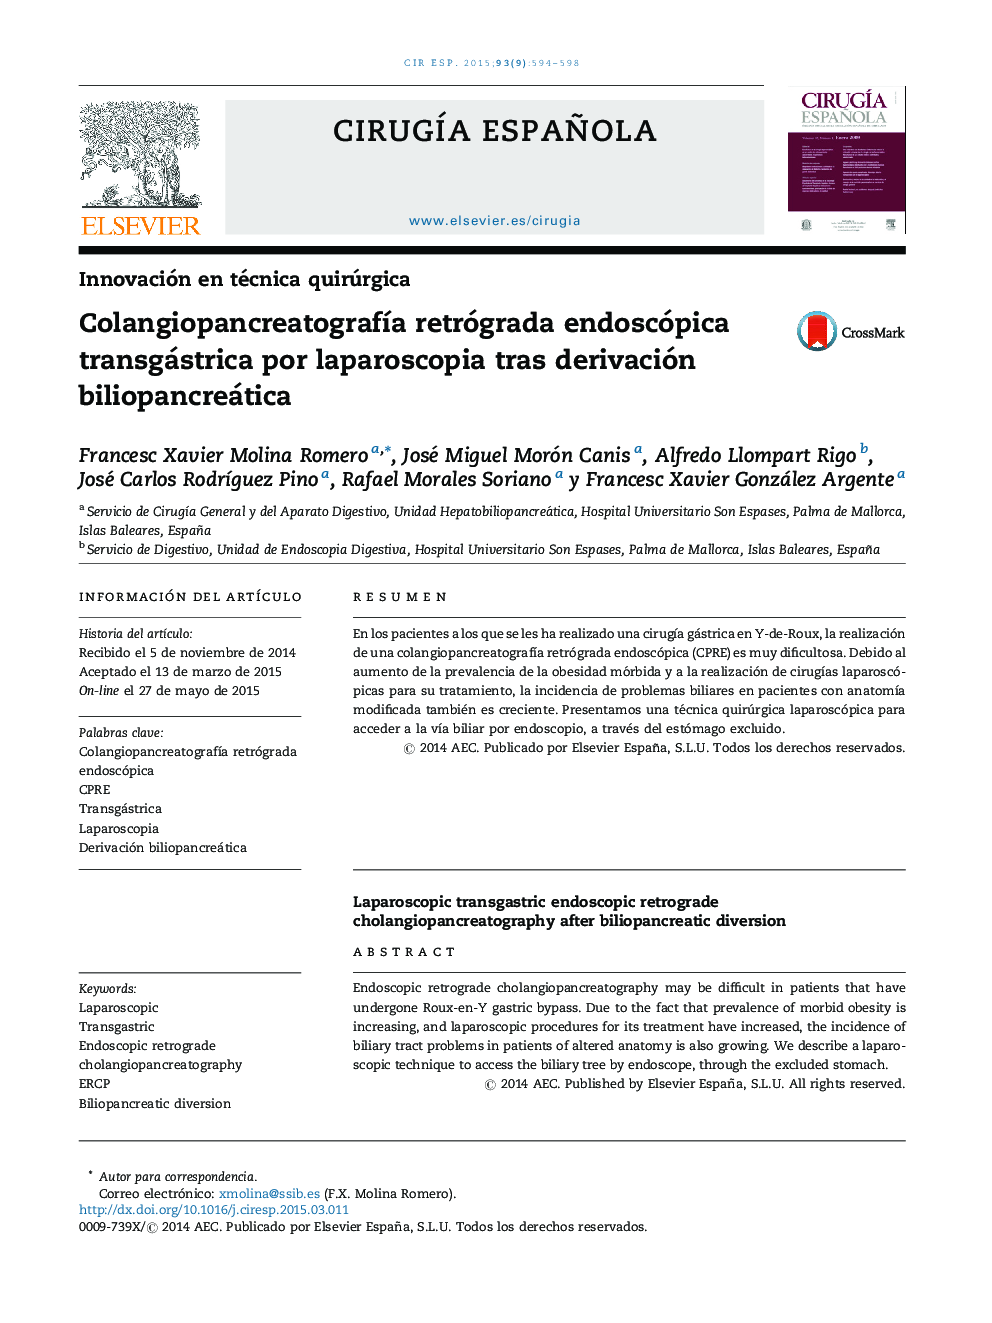 ColangiopancreatografÃ­a retrógrada endoscópica transgástrica por laparoscopia tras derivación biliopancreática